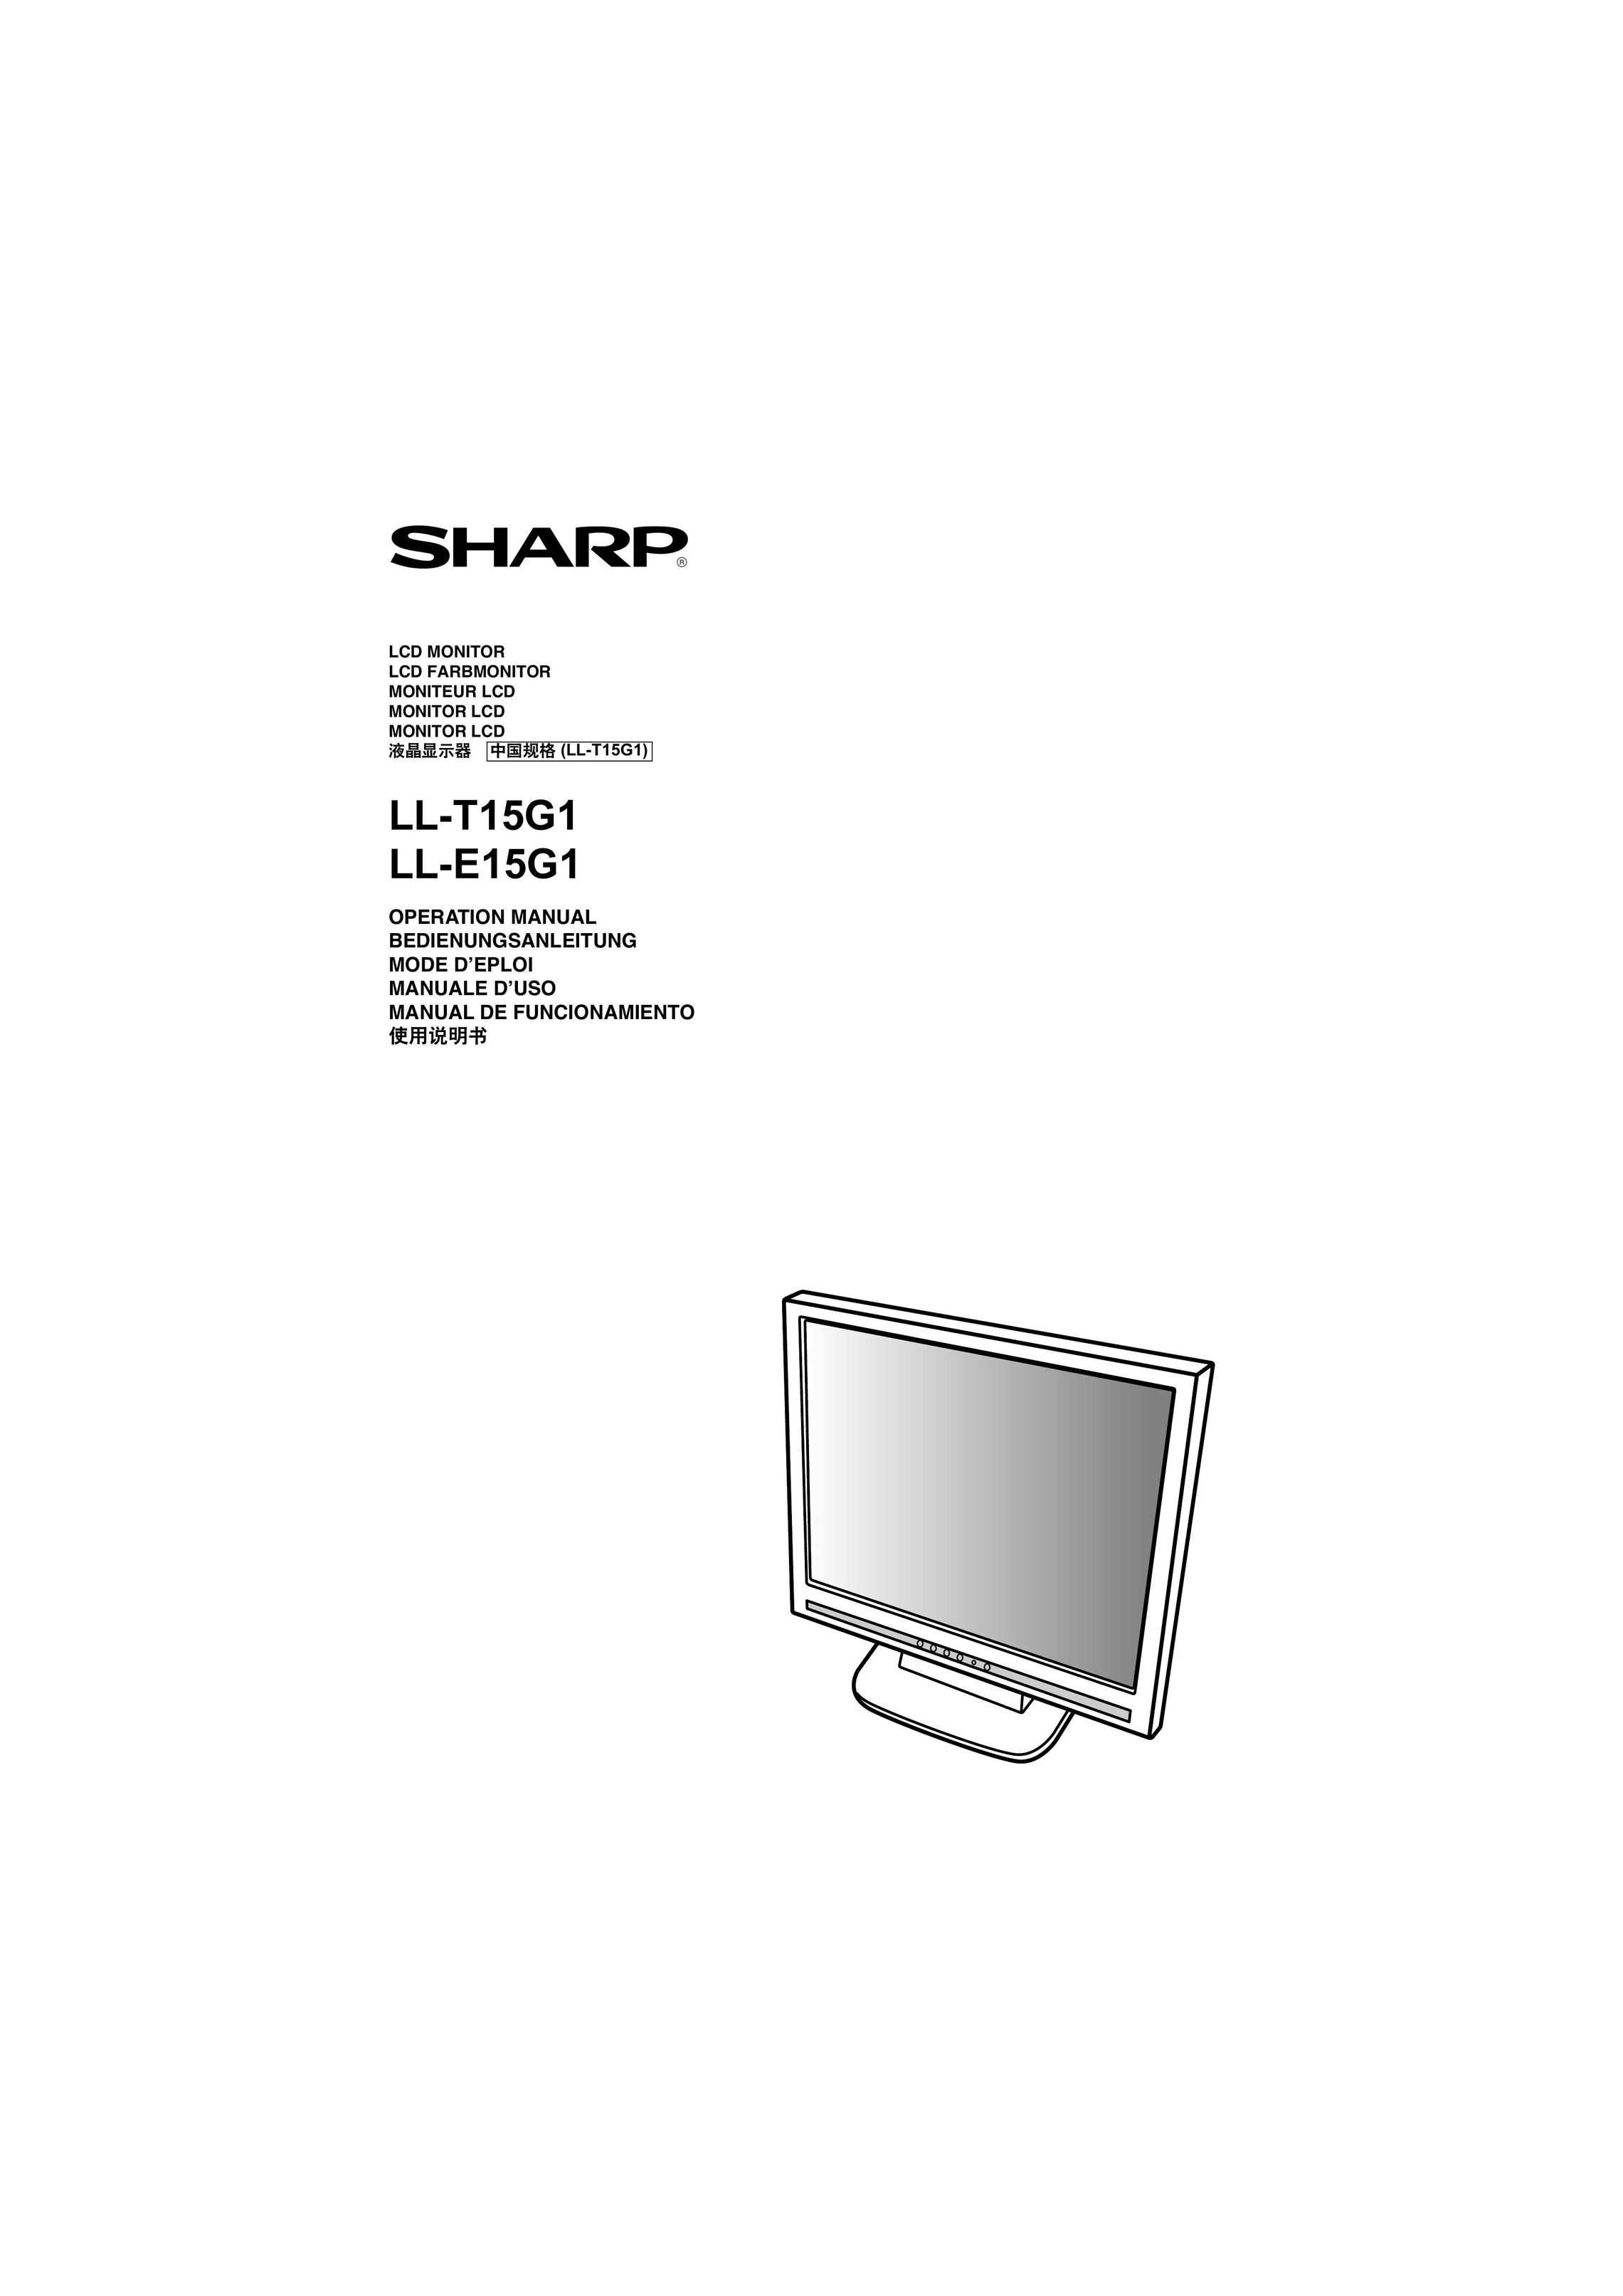 Sharp LL-T15G1 Computer Monitor User Manual